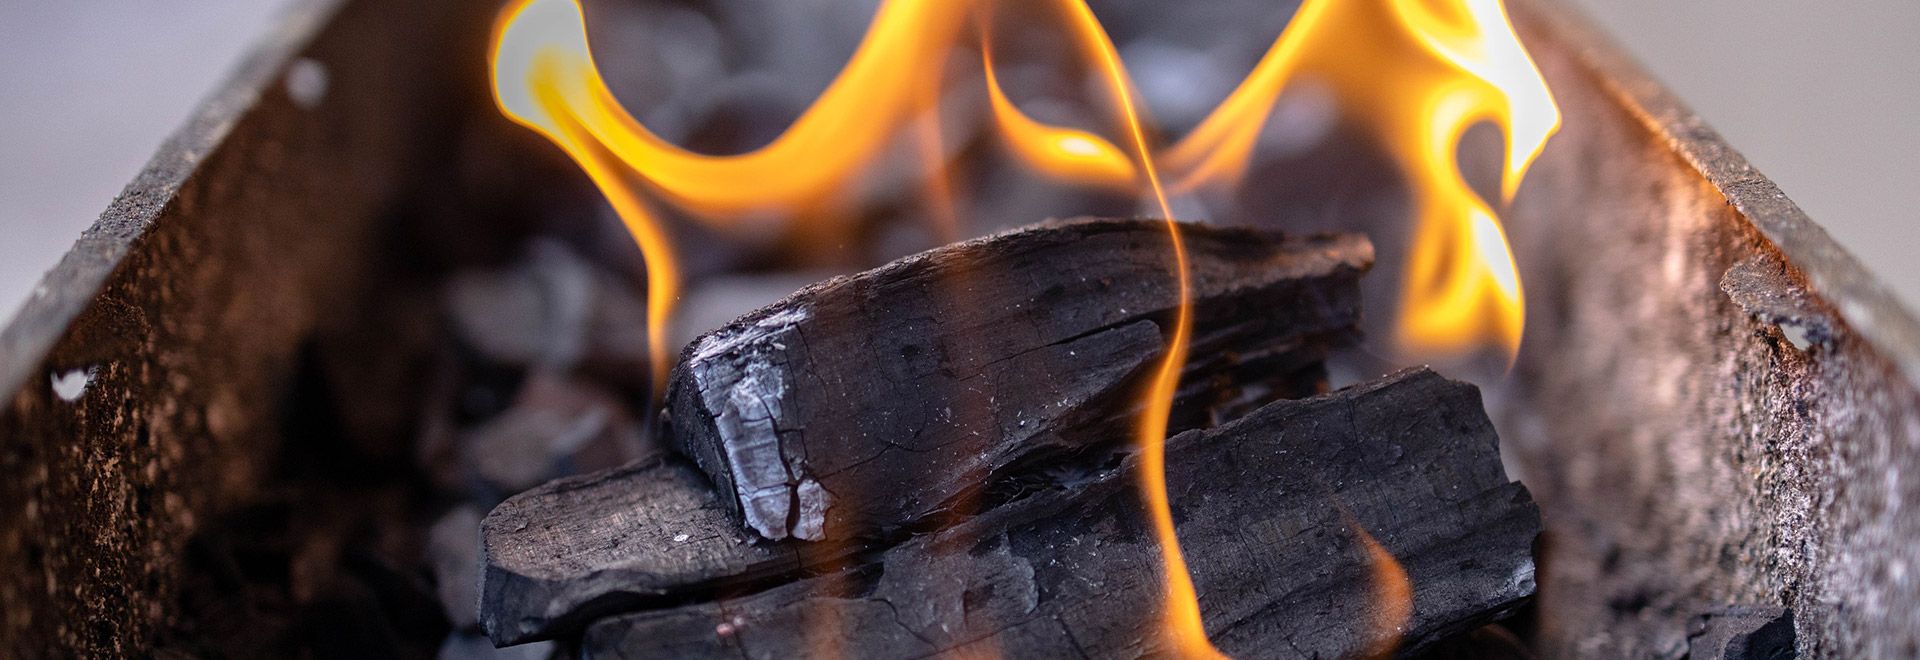 Briquettes et charbon de bois : portrait de ces combustibles - Doyon Després